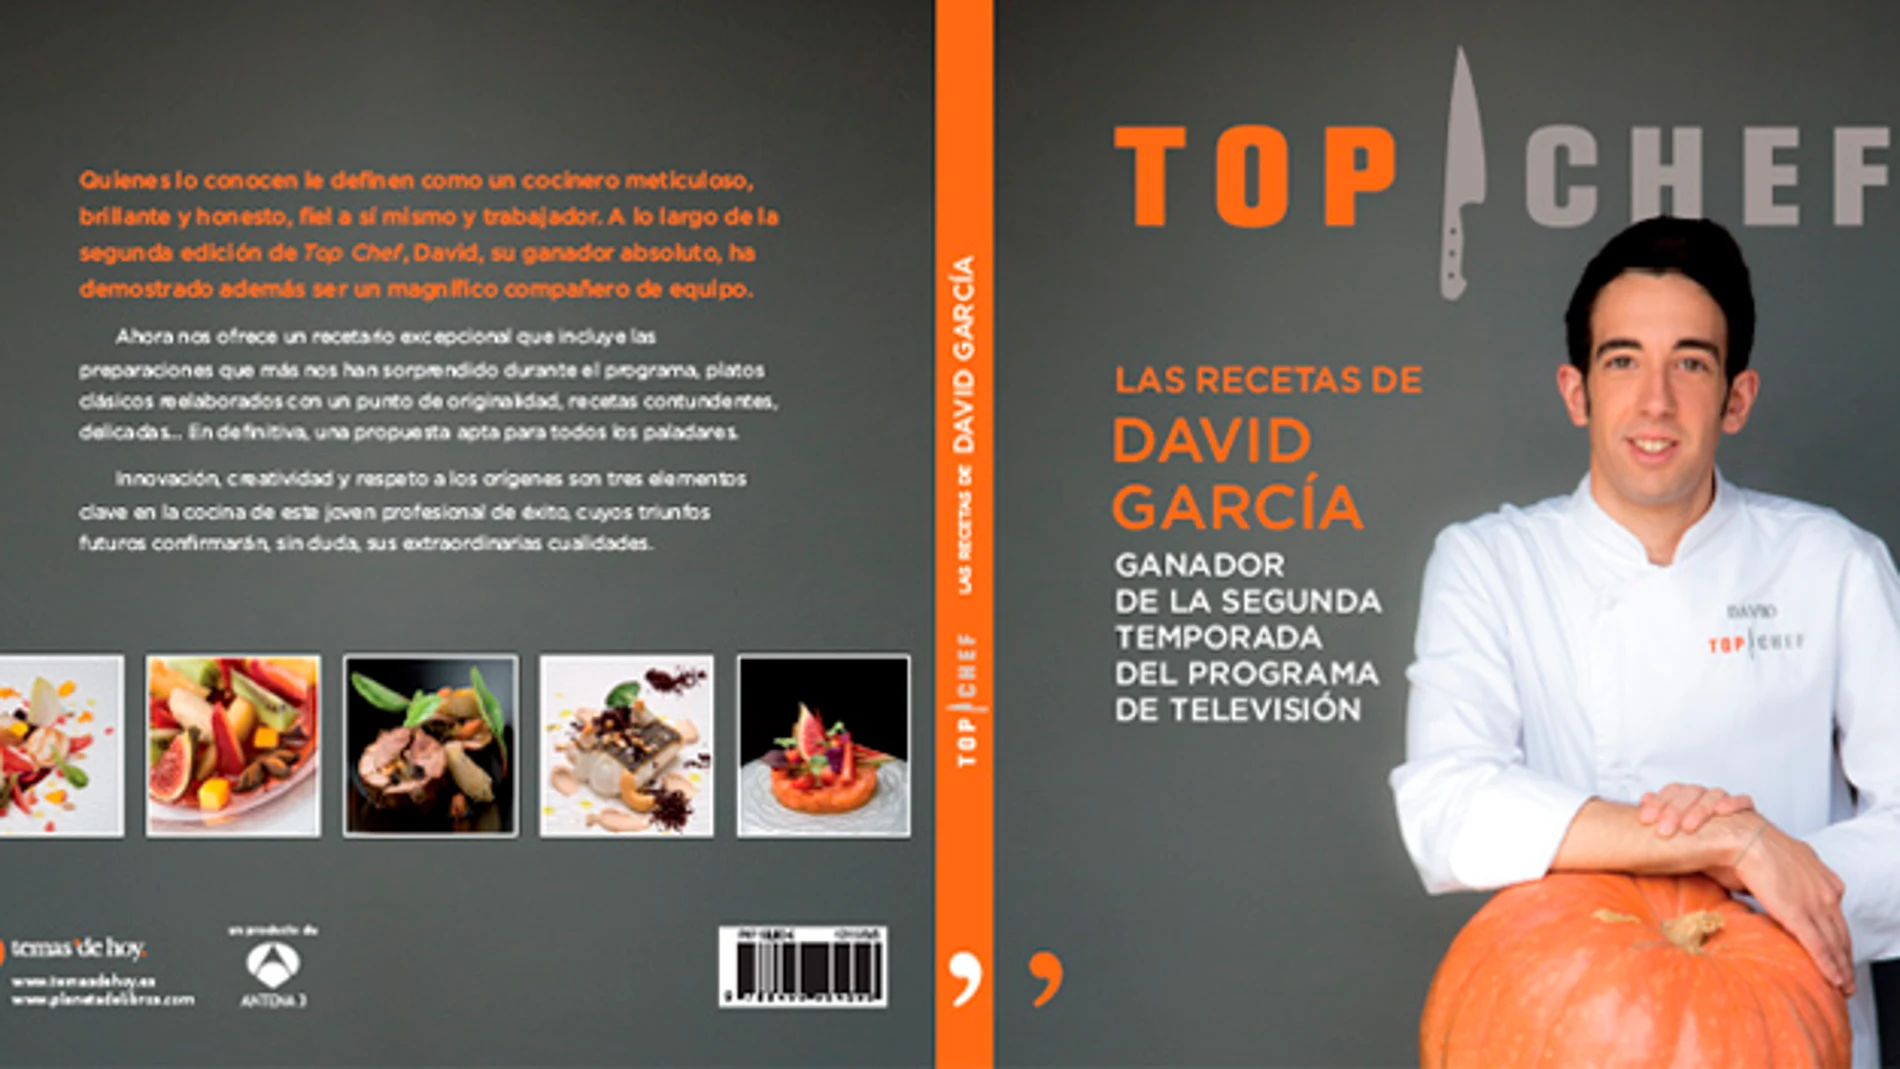 Las recetas de David García